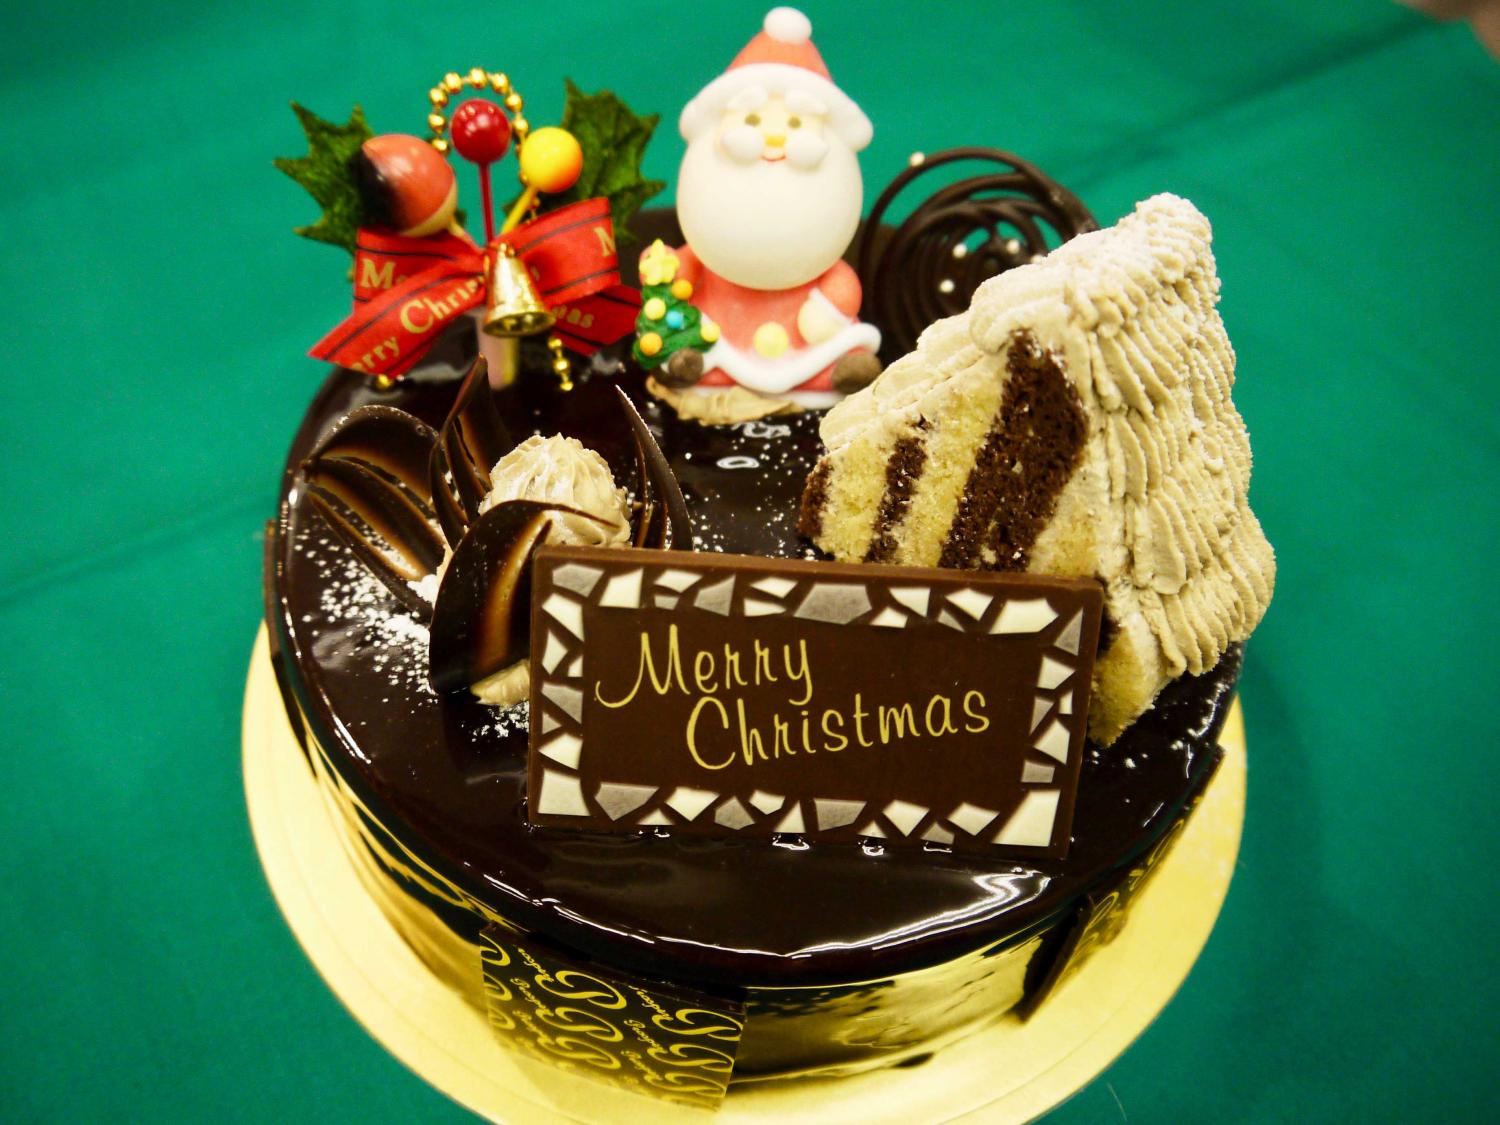 今年のクリスマスは ママが食べたい大人のケーキを買ってしまいましょう 練馬の極上クリスマスケーキ19 特集記事 とっておきの練馬